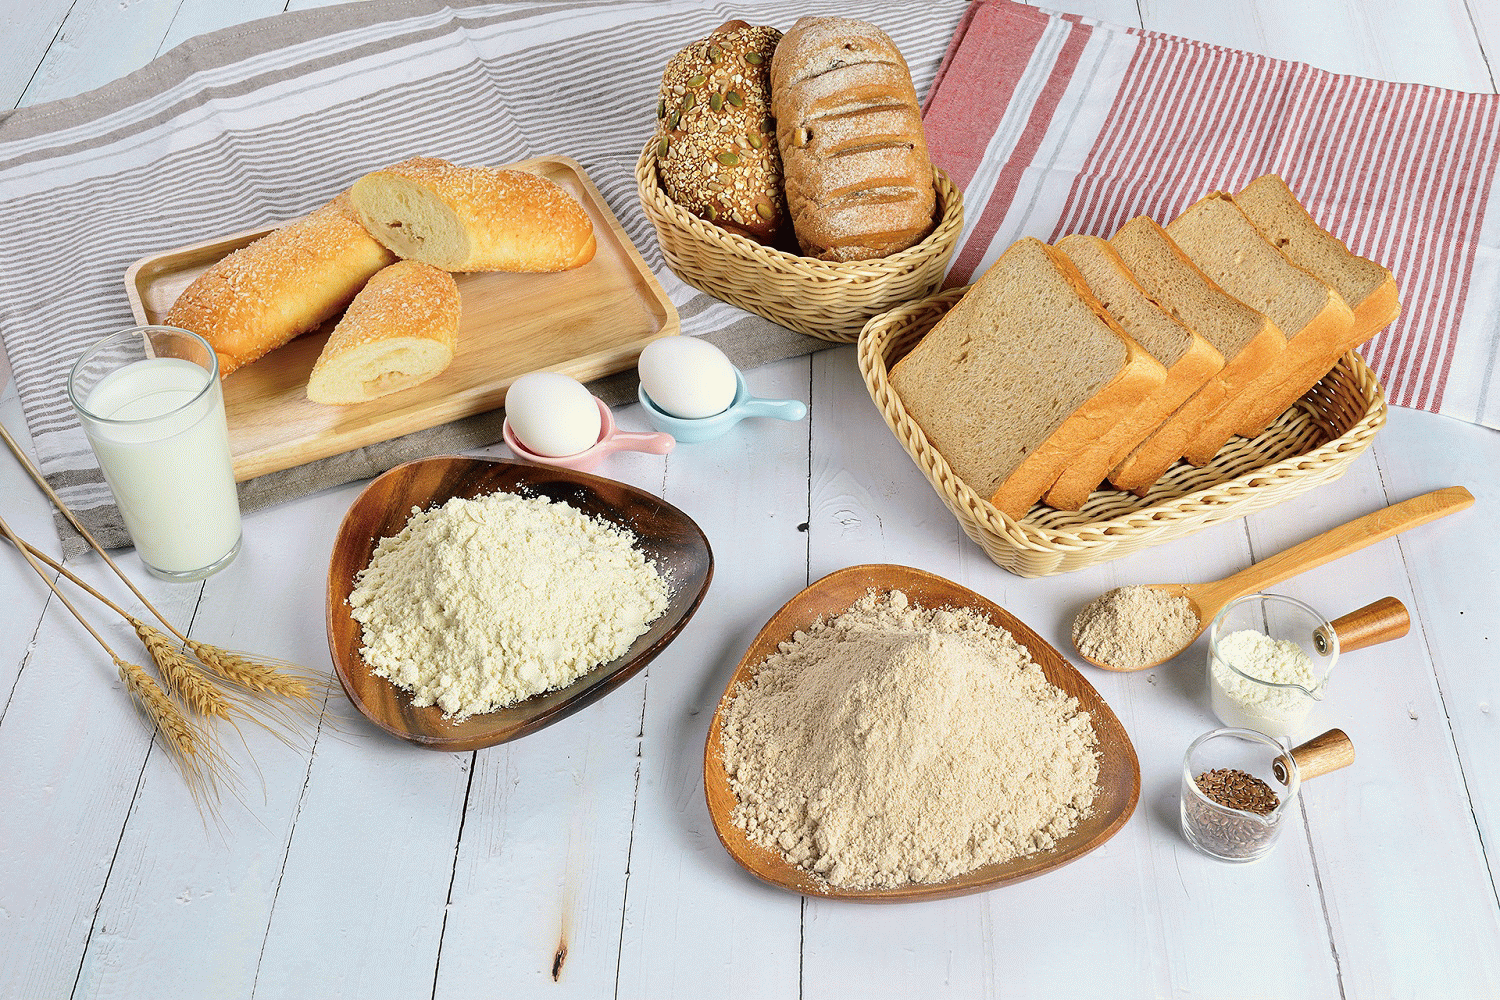 統一麵粉搶攻機能性烘焙市場藍海 推出高纖、高蛋白質專用粉   打造營養師也點頭的美味麵包